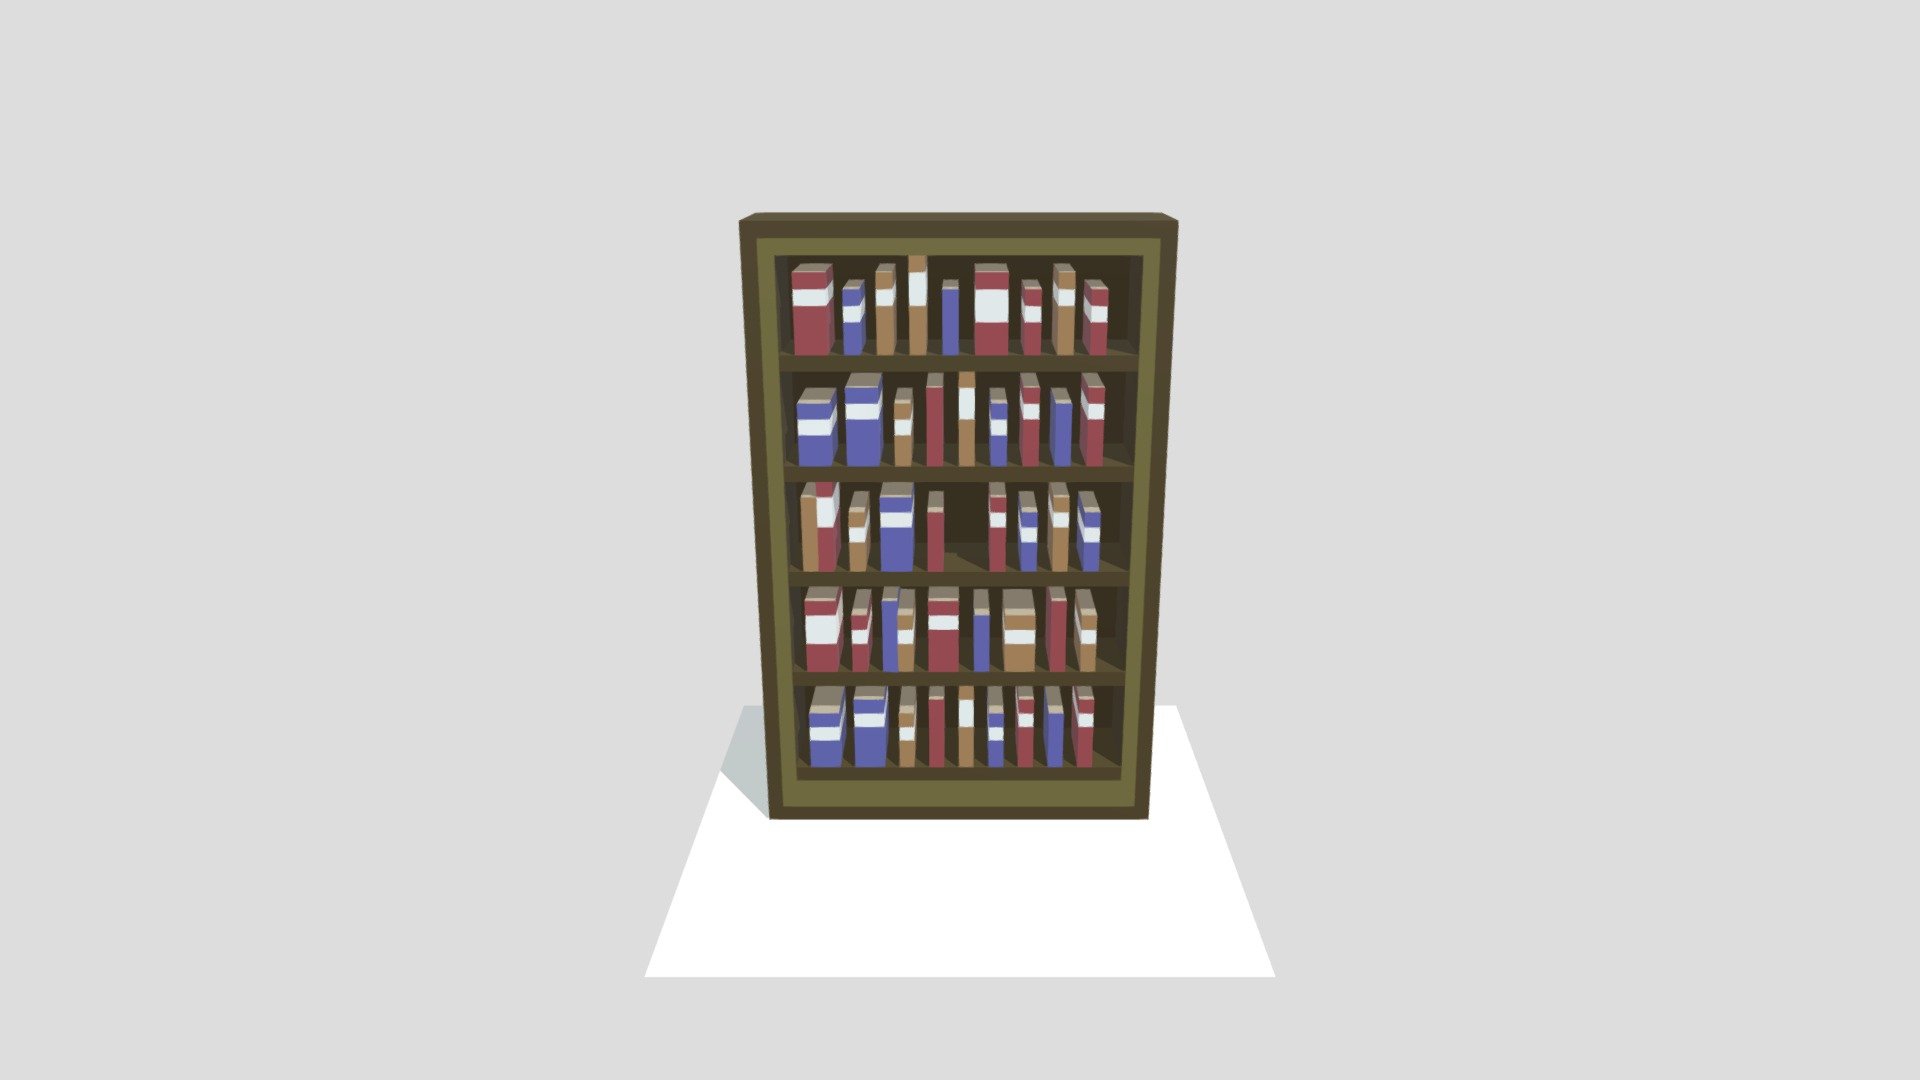 Wooden Bookcase from Starbound

Voxel interpretation based on asset image 3d model